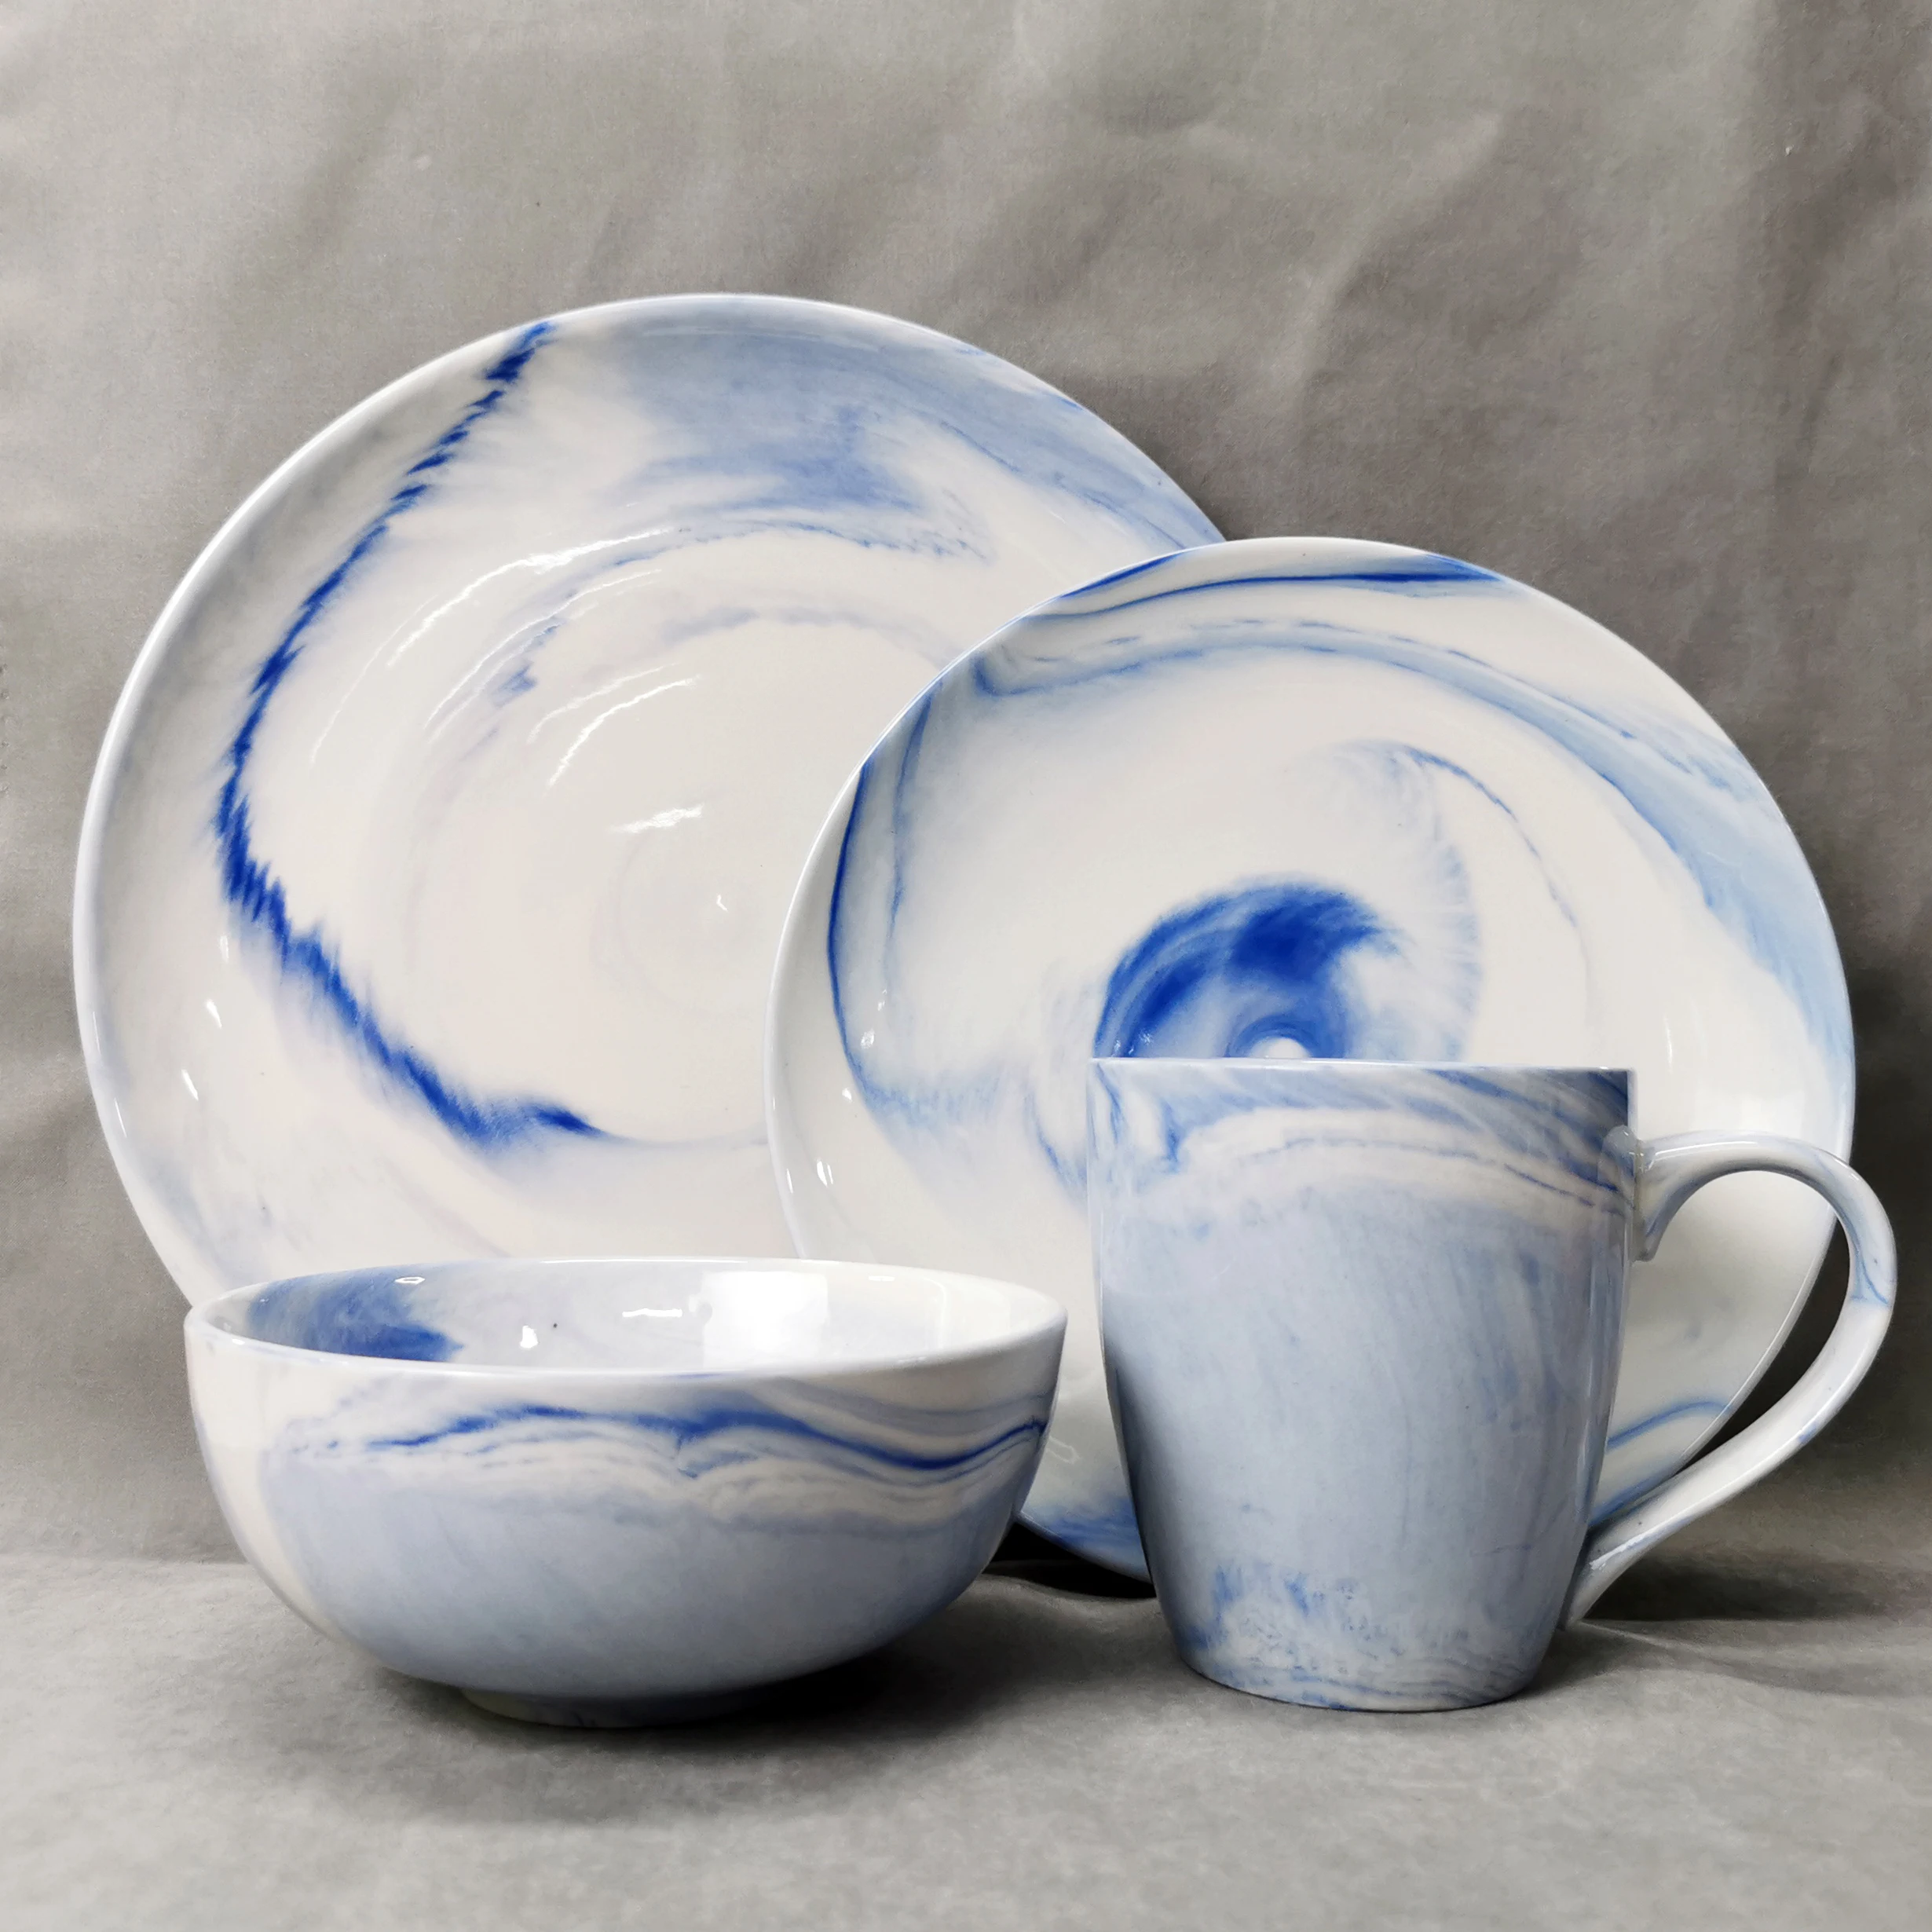  DS01 оптовая продажа 16 шт. 20 синий мраморный вид столовая посуда тонкая костяная Фарфоровая набор керамический фарфор